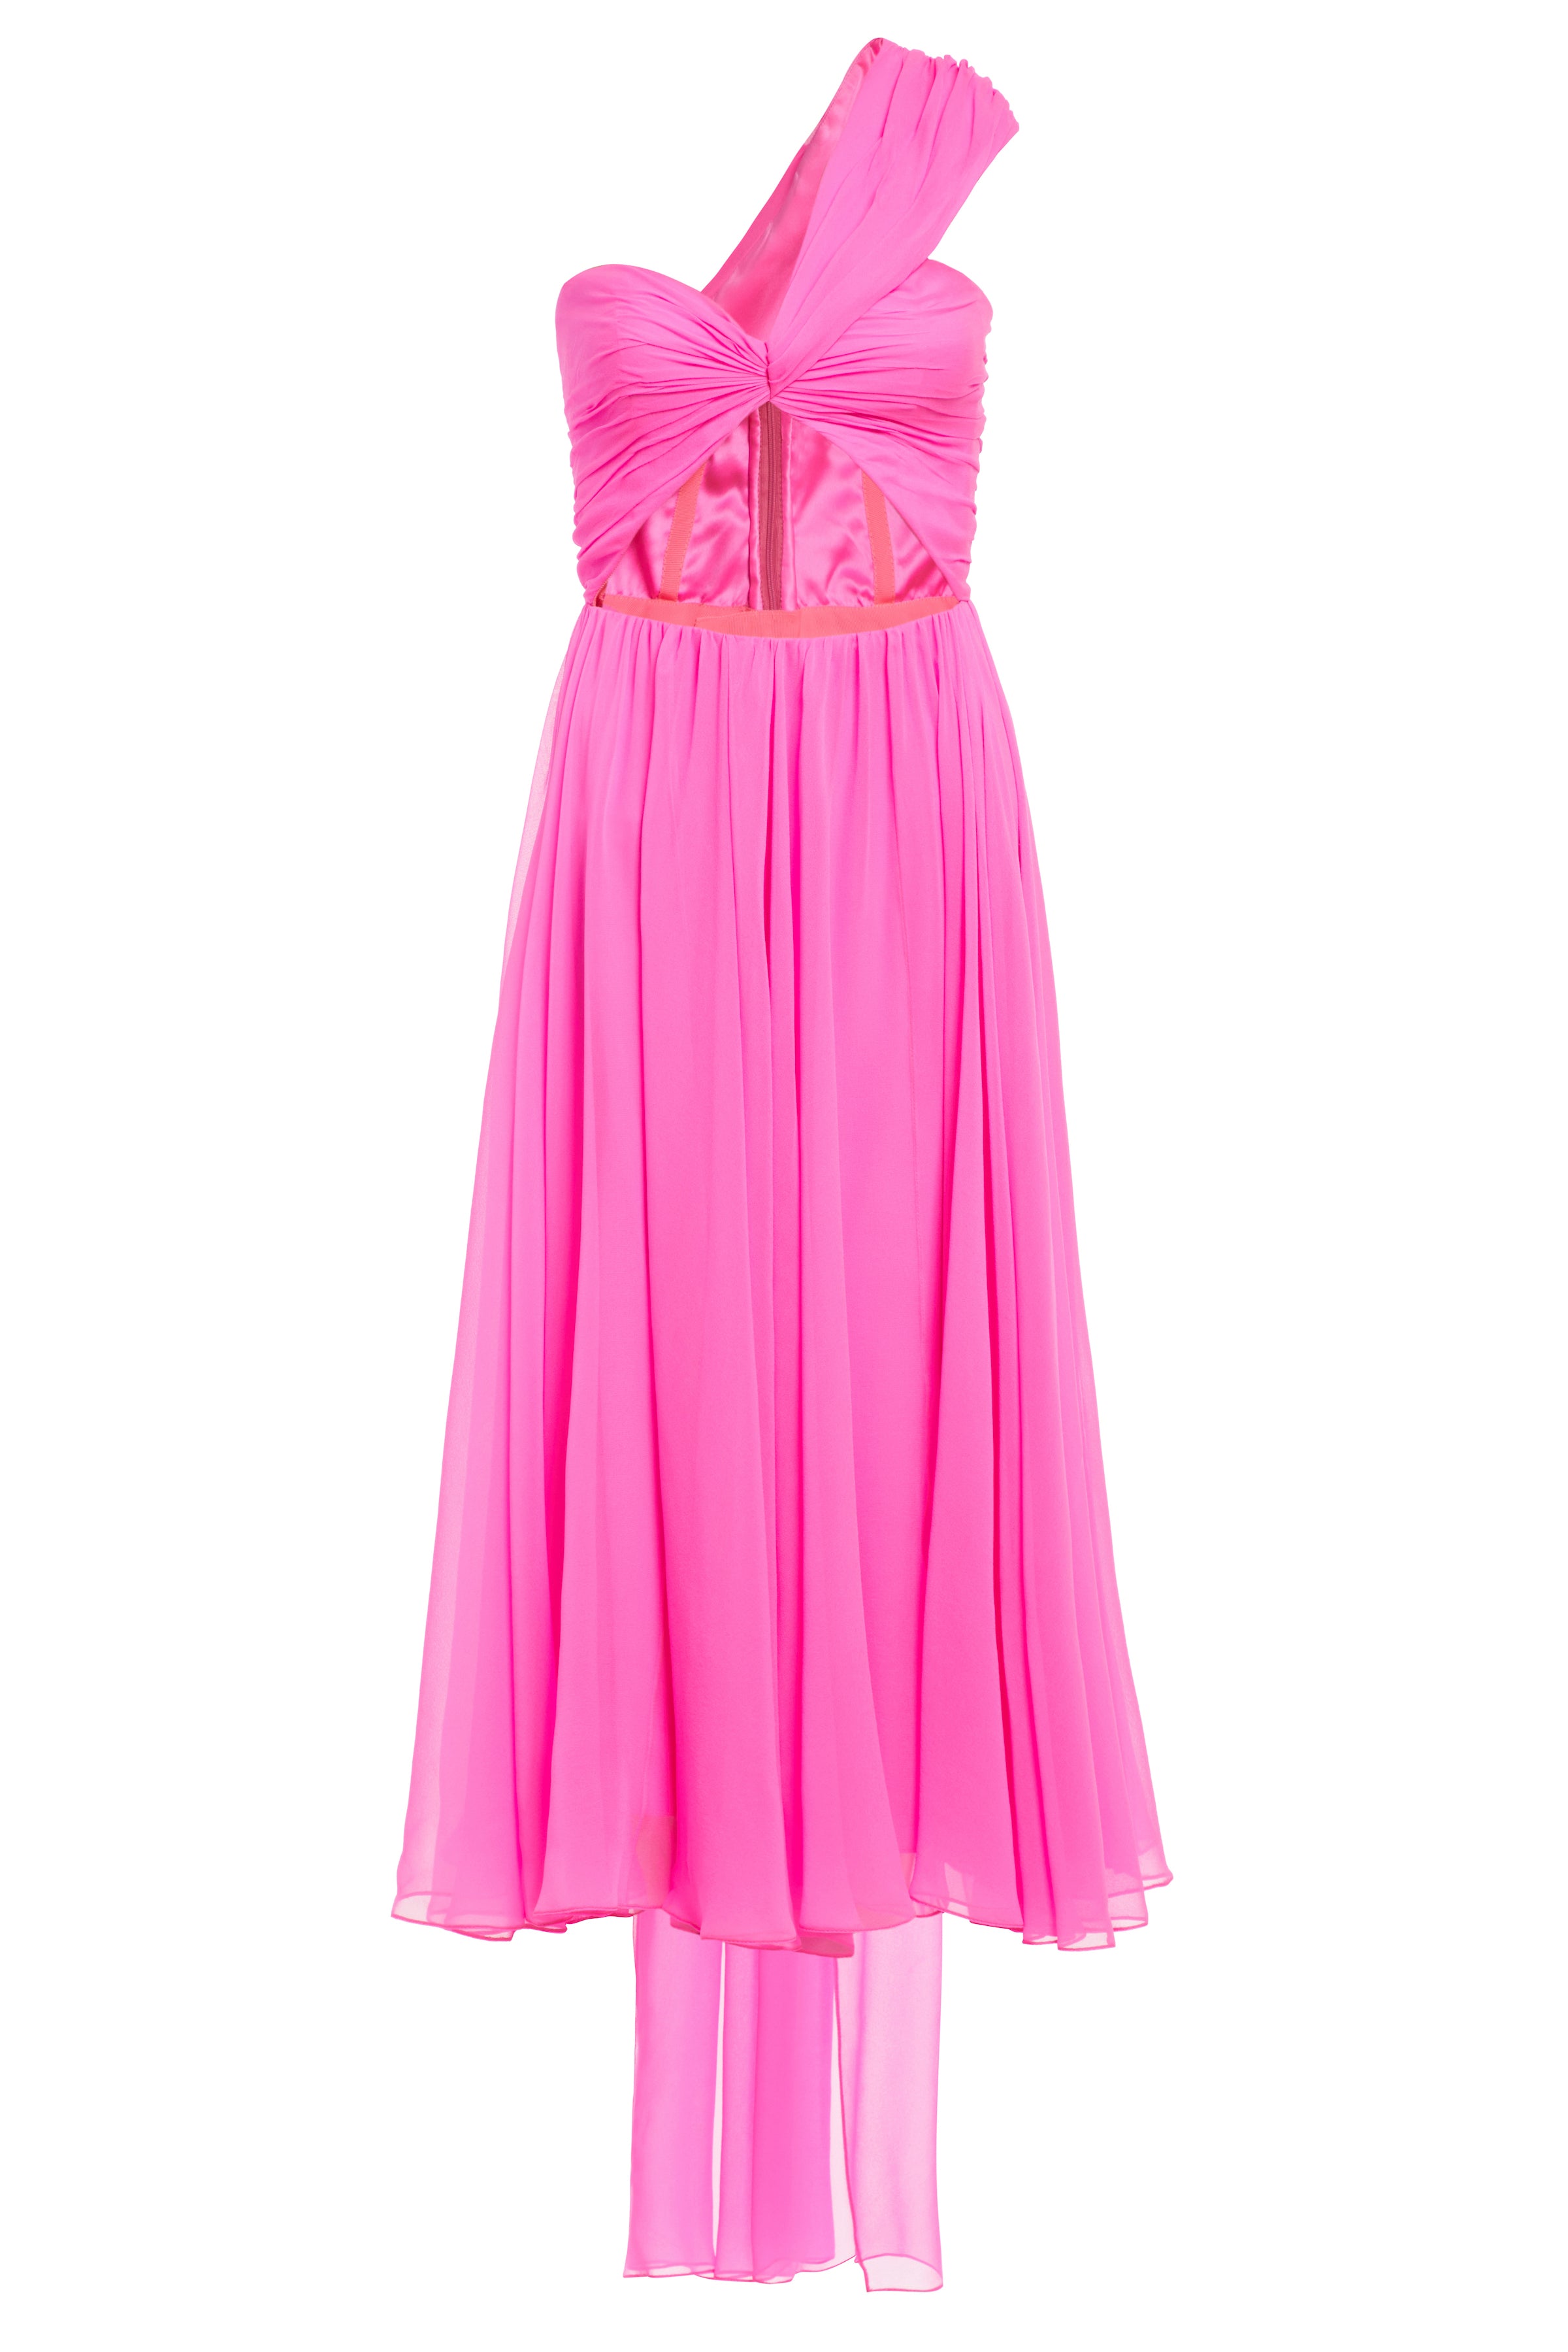 Rosalind Pink One Shoulder Dress